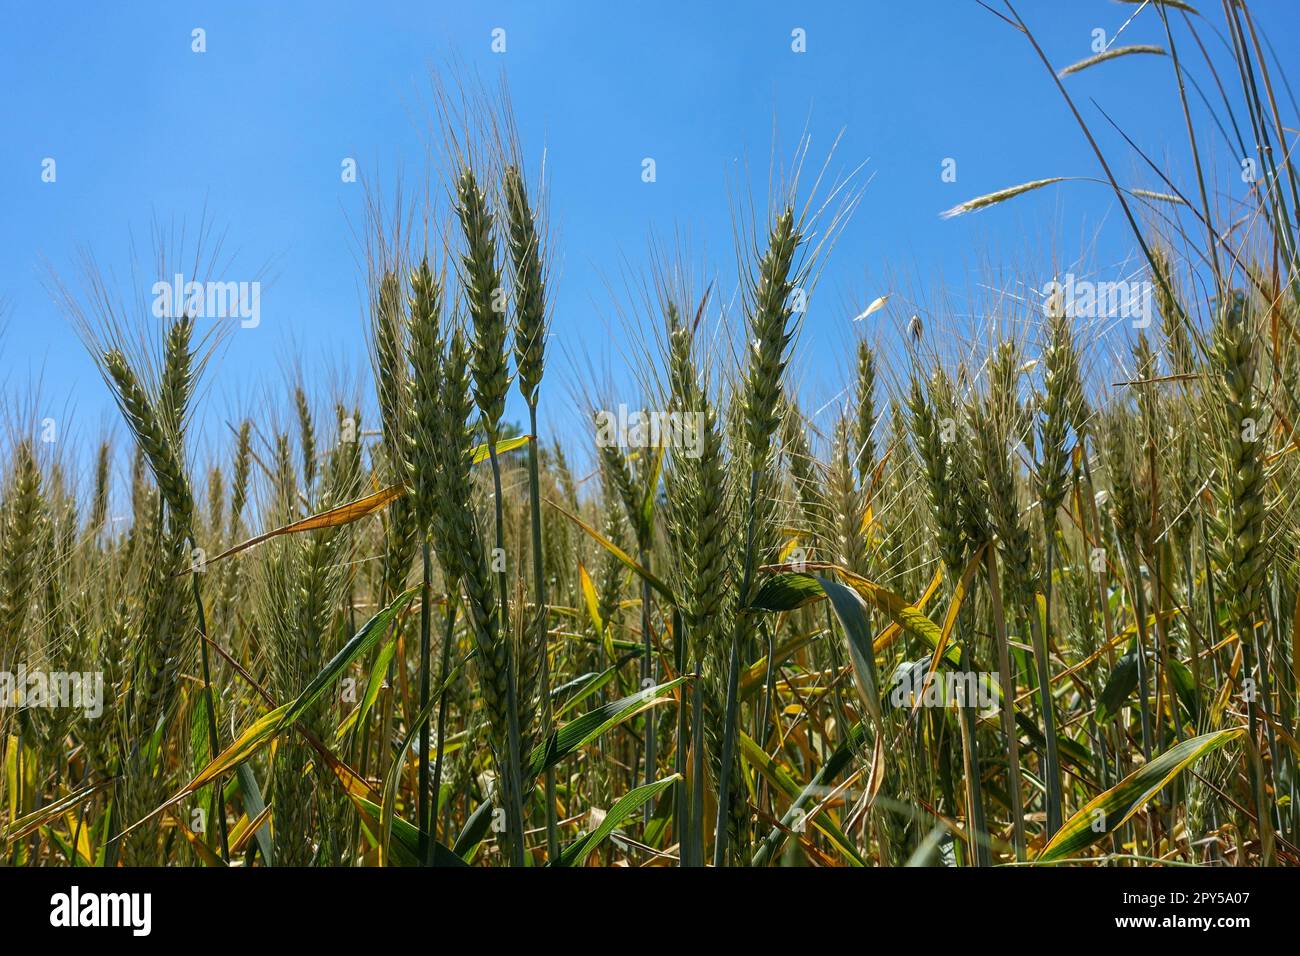 Nahaufnahme von Weizenohren auf dem Feld, Bilder von Weizenohren, Weizenanbau und Weizenerntezeit Stockfoto